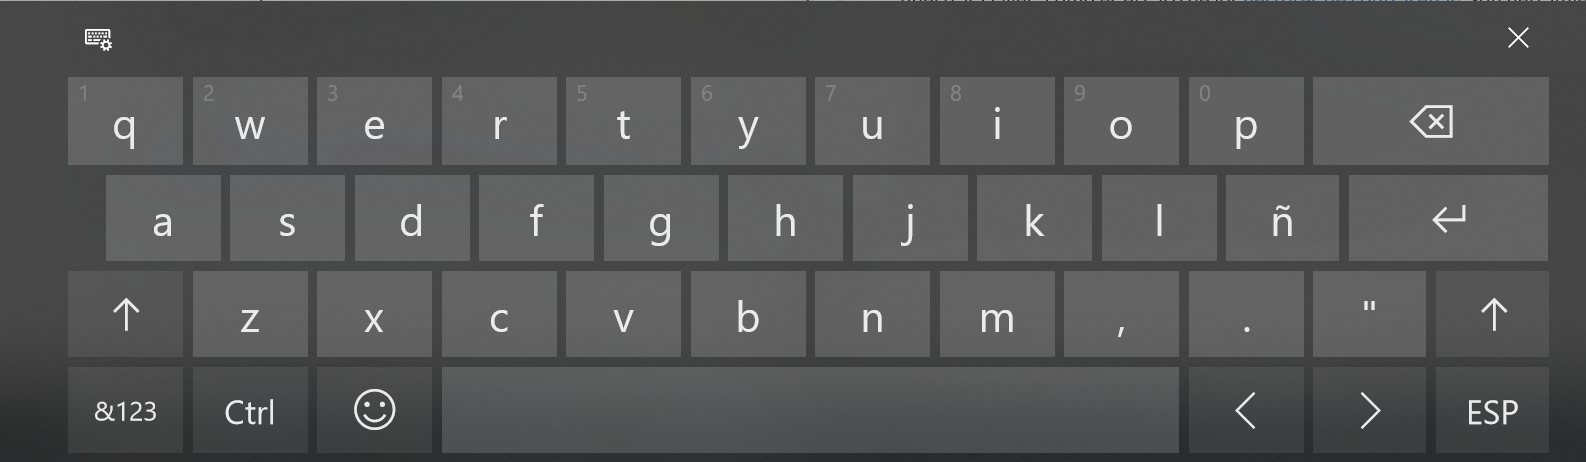 Ejemplo de un teclado virtual